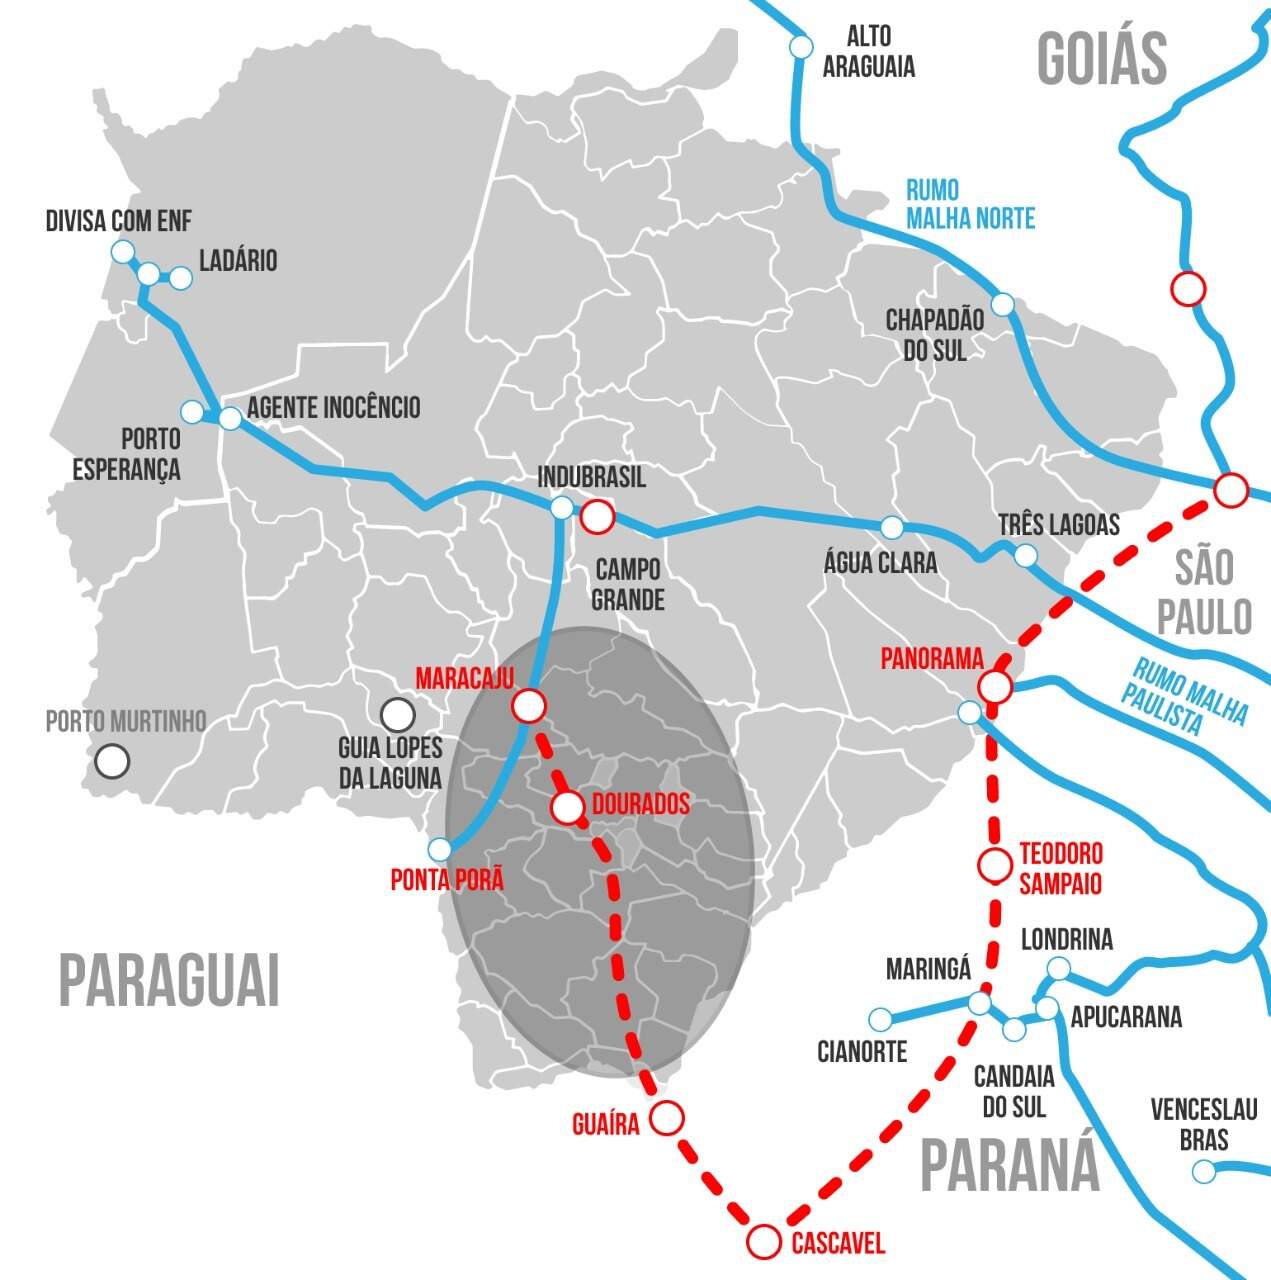 Linha tracejada em vermelho mostra traçado que terá a Nova Ferroeste no Estado (Infográfico: Thiago Mendes)